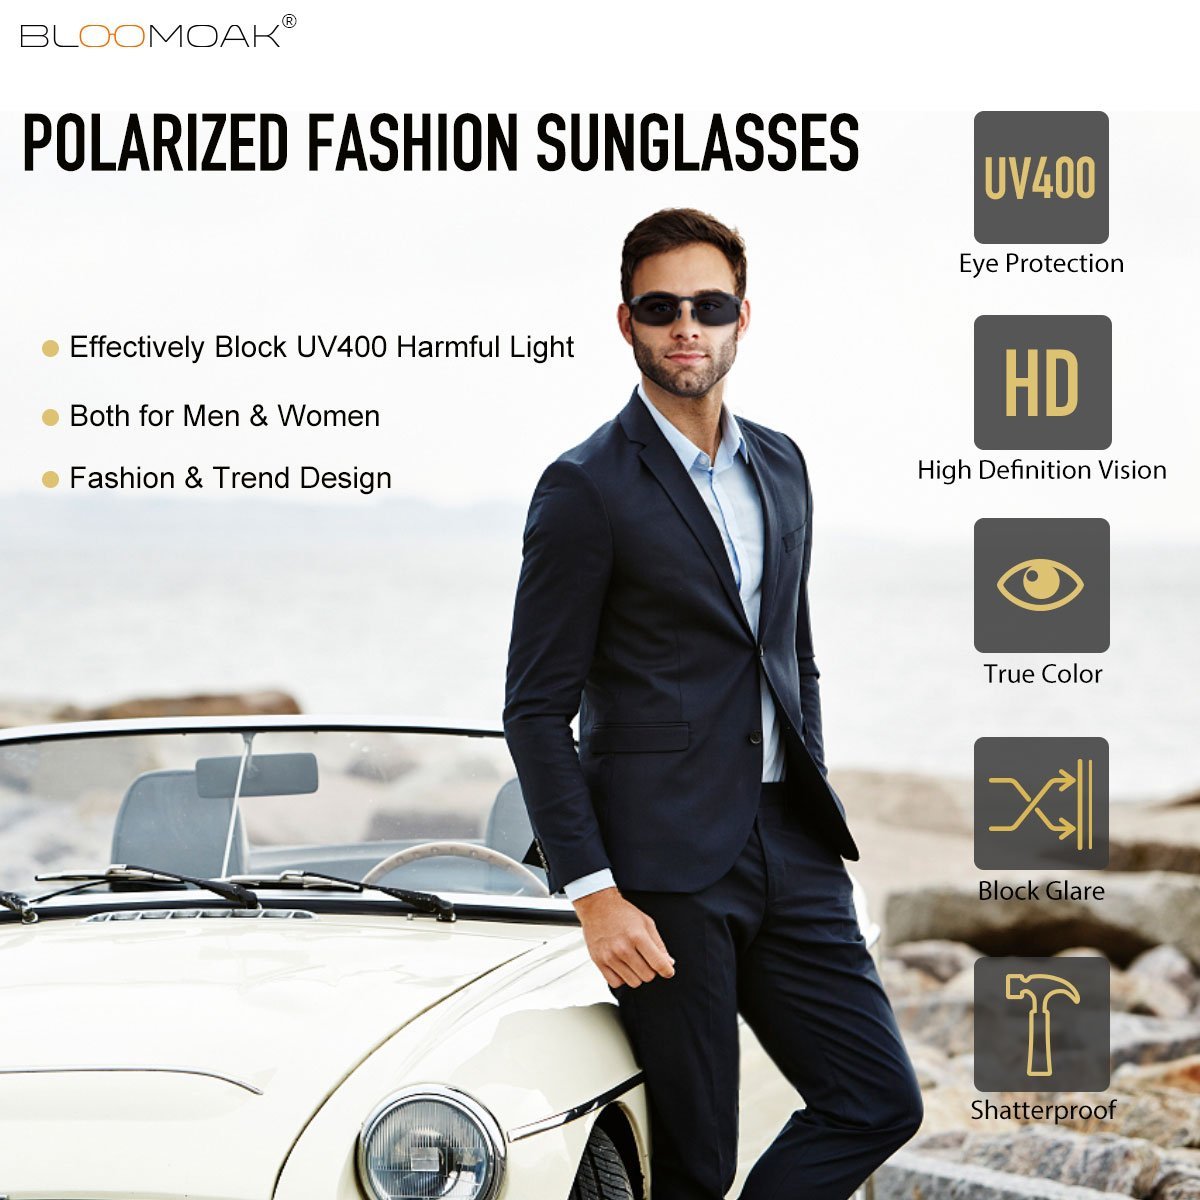 Driving Glasses, Polarized Sunglasses for Men/Women (Gray Lens) - Bloomoak